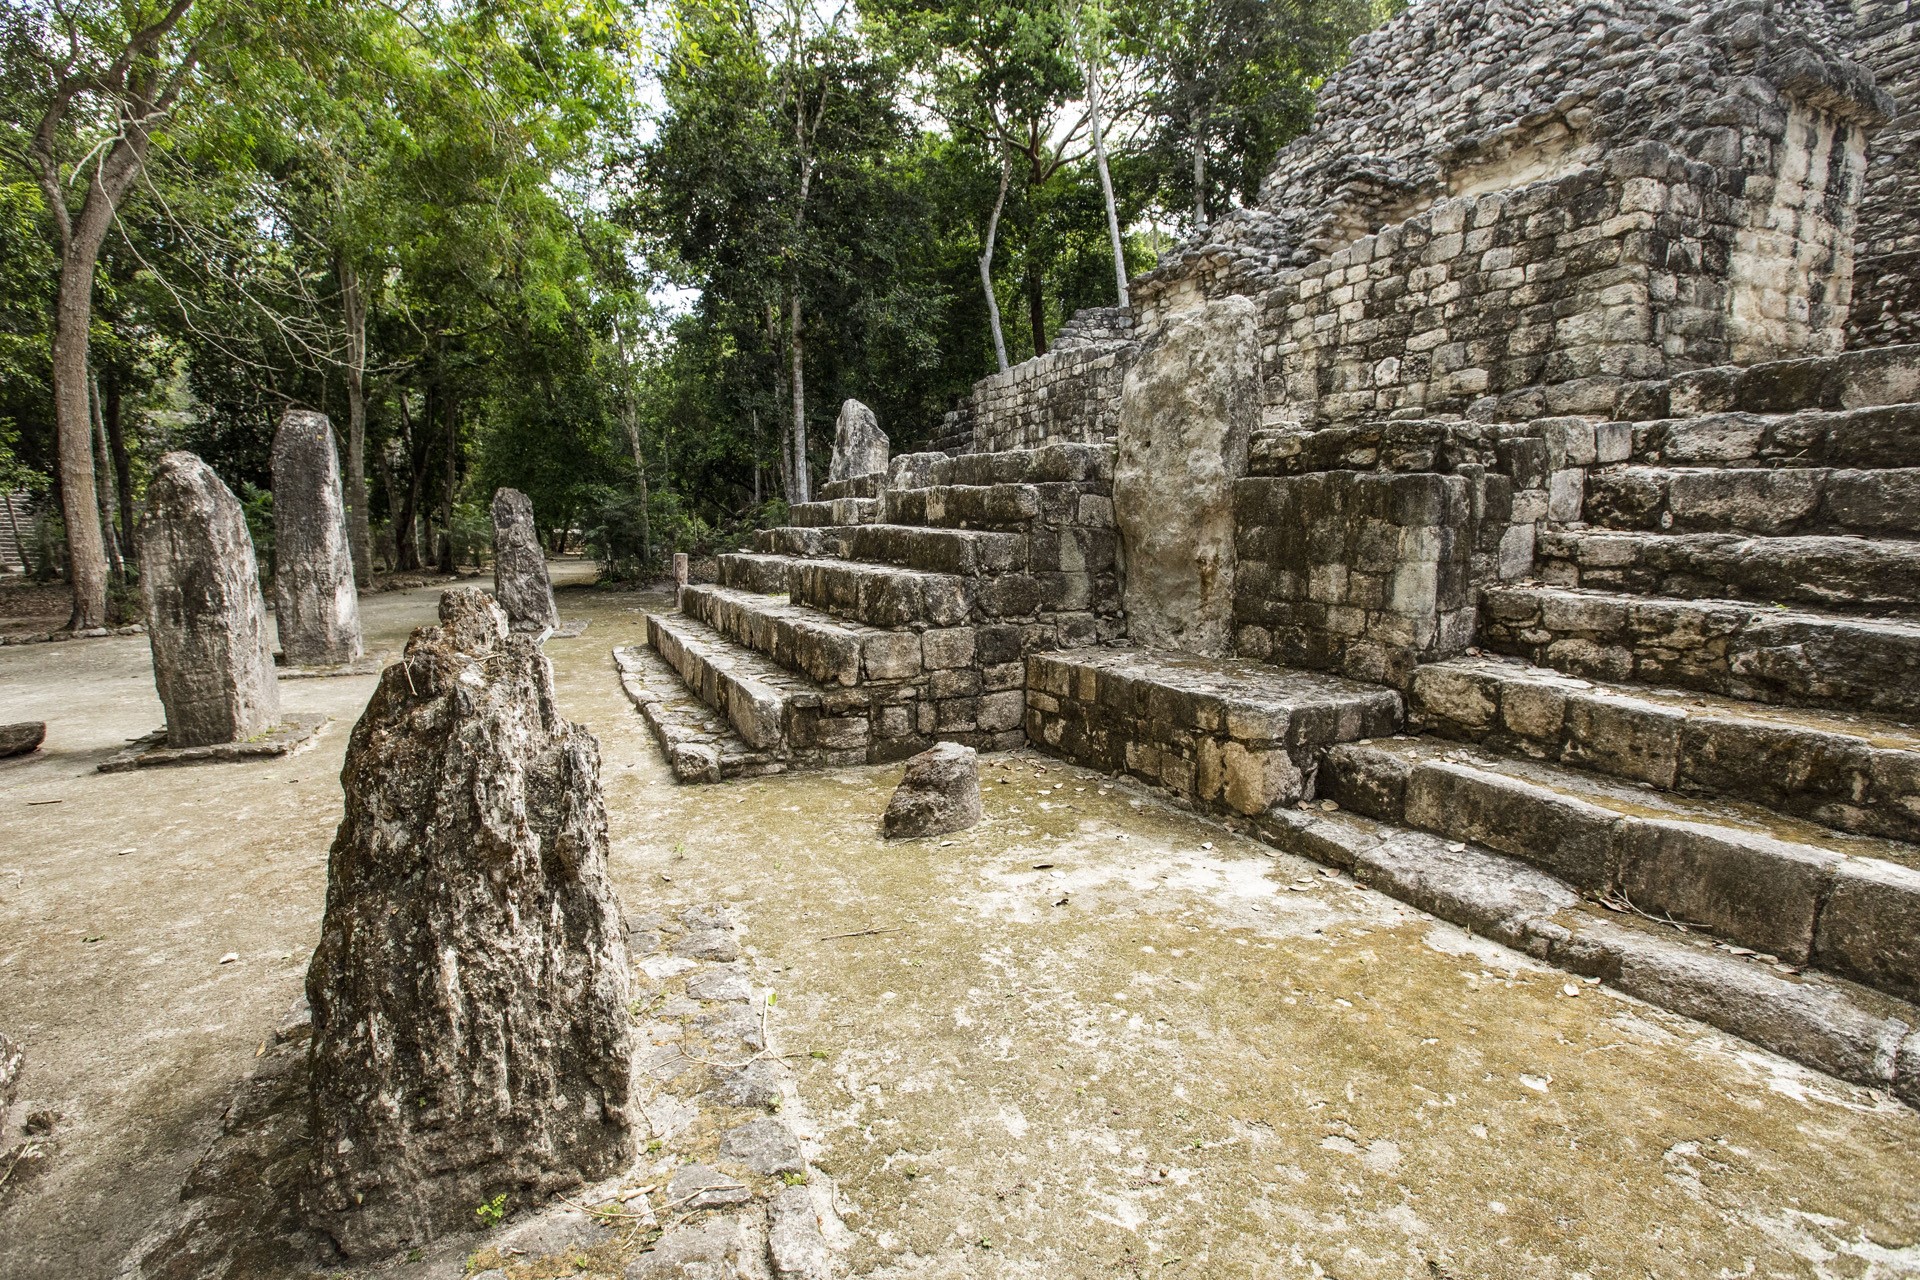 az UNESCO világörökségi listáján szereplő ősi maja város, sztélék Calakmul egyik piramisának lábánál. 